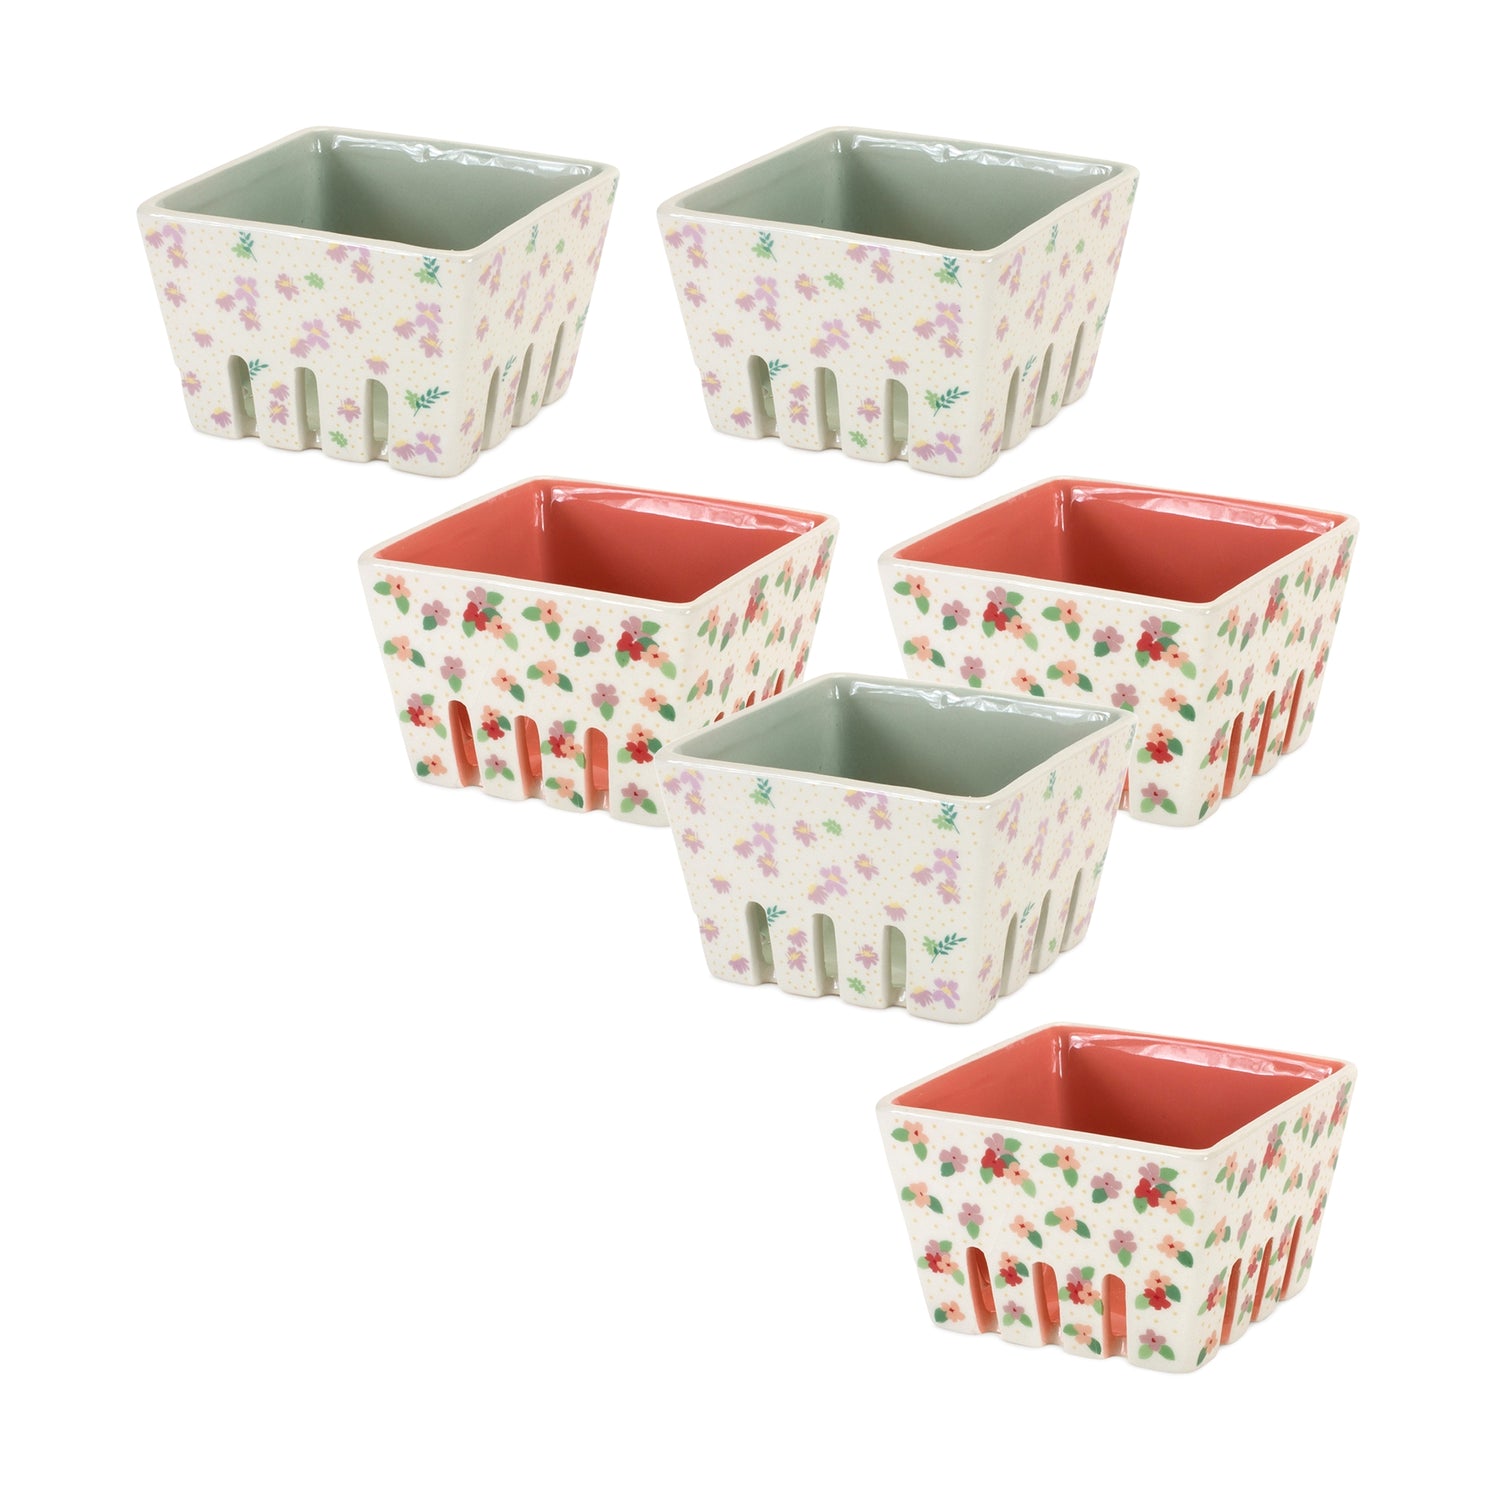 Berry Container (Set of 6) 4.25"L x 3"H Ceramic